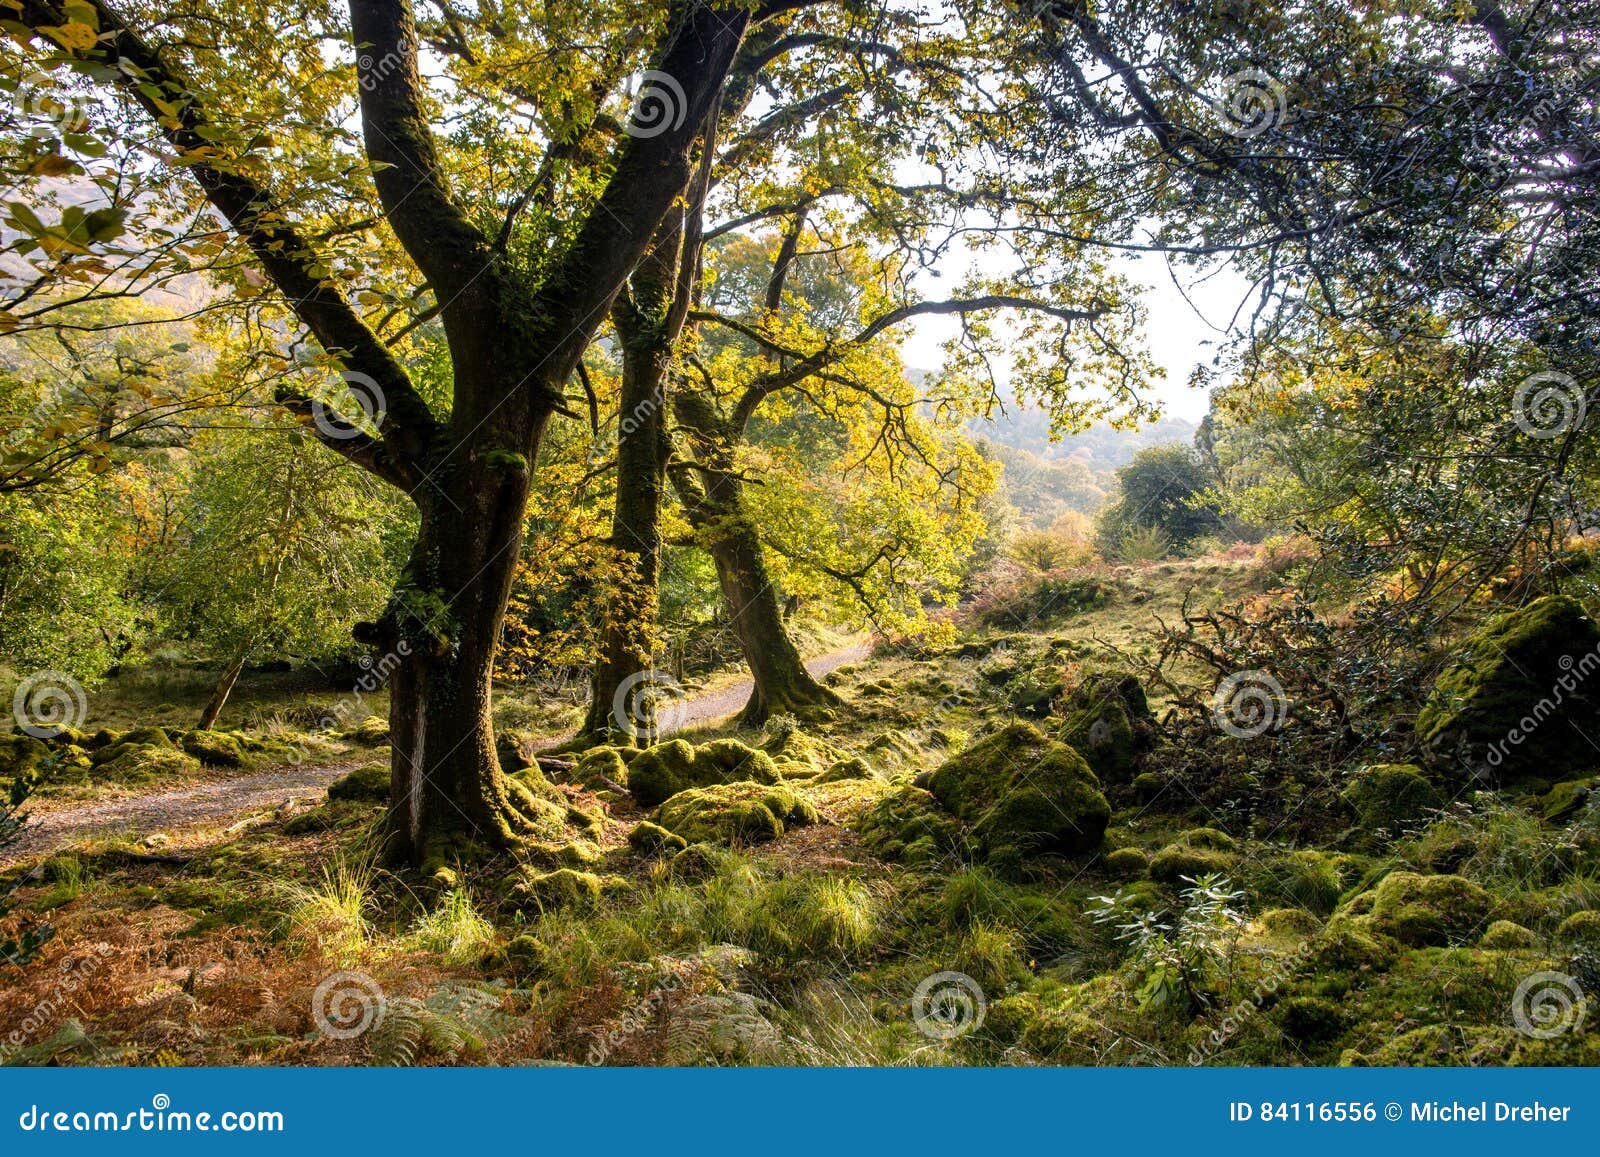 Killarney national park stock photo. Image of park, trees - 84116556